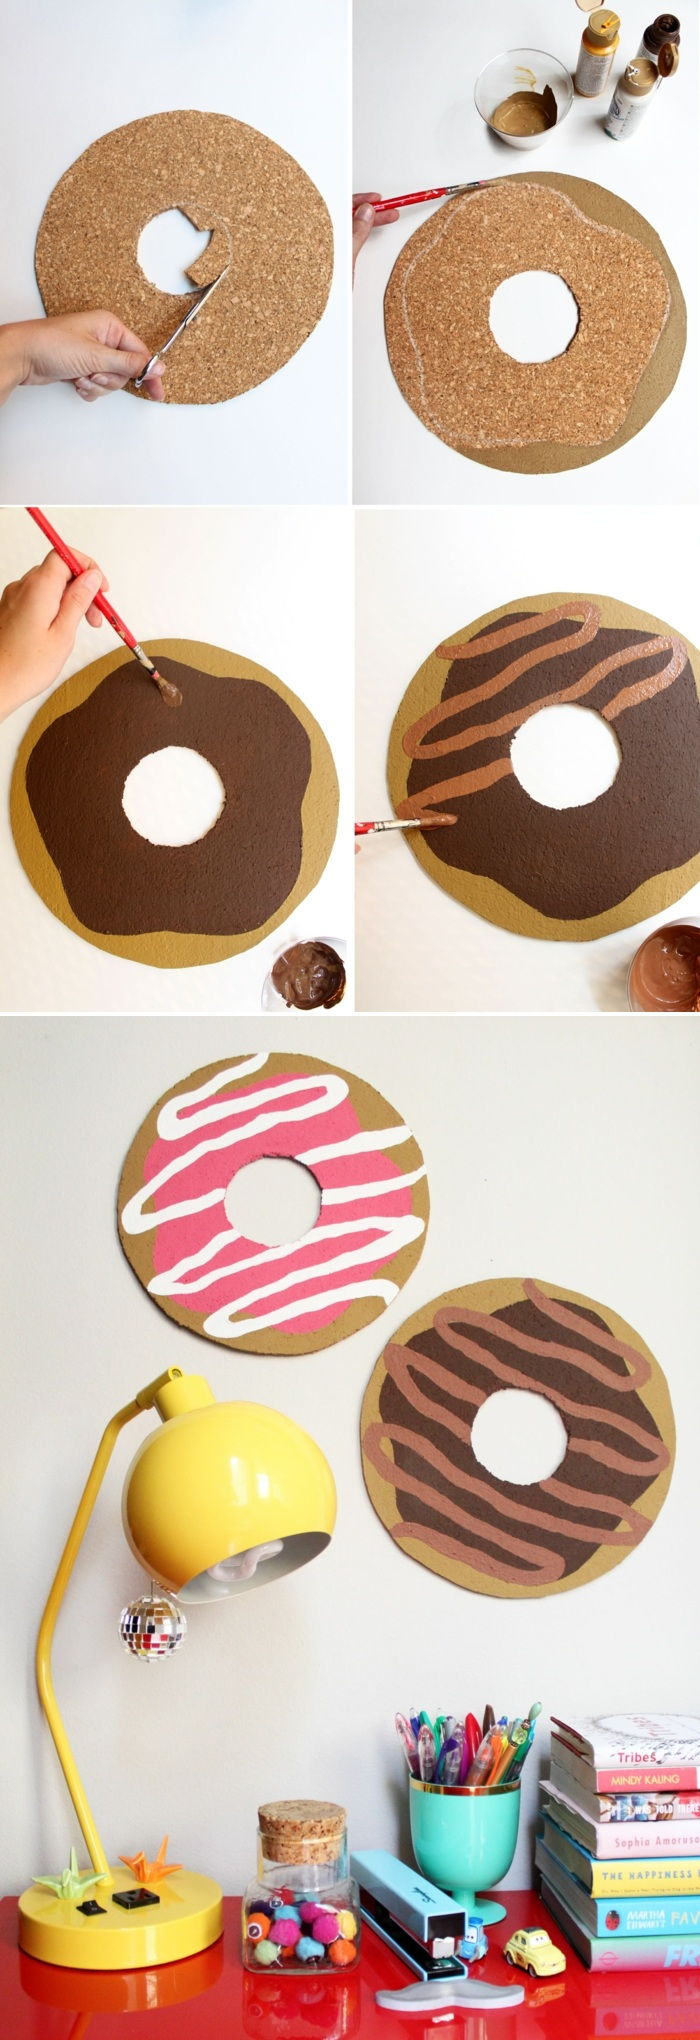 Pinplater laget av kork i form av donuts, hjemmelaget tinker, maling, børste, gul lampe